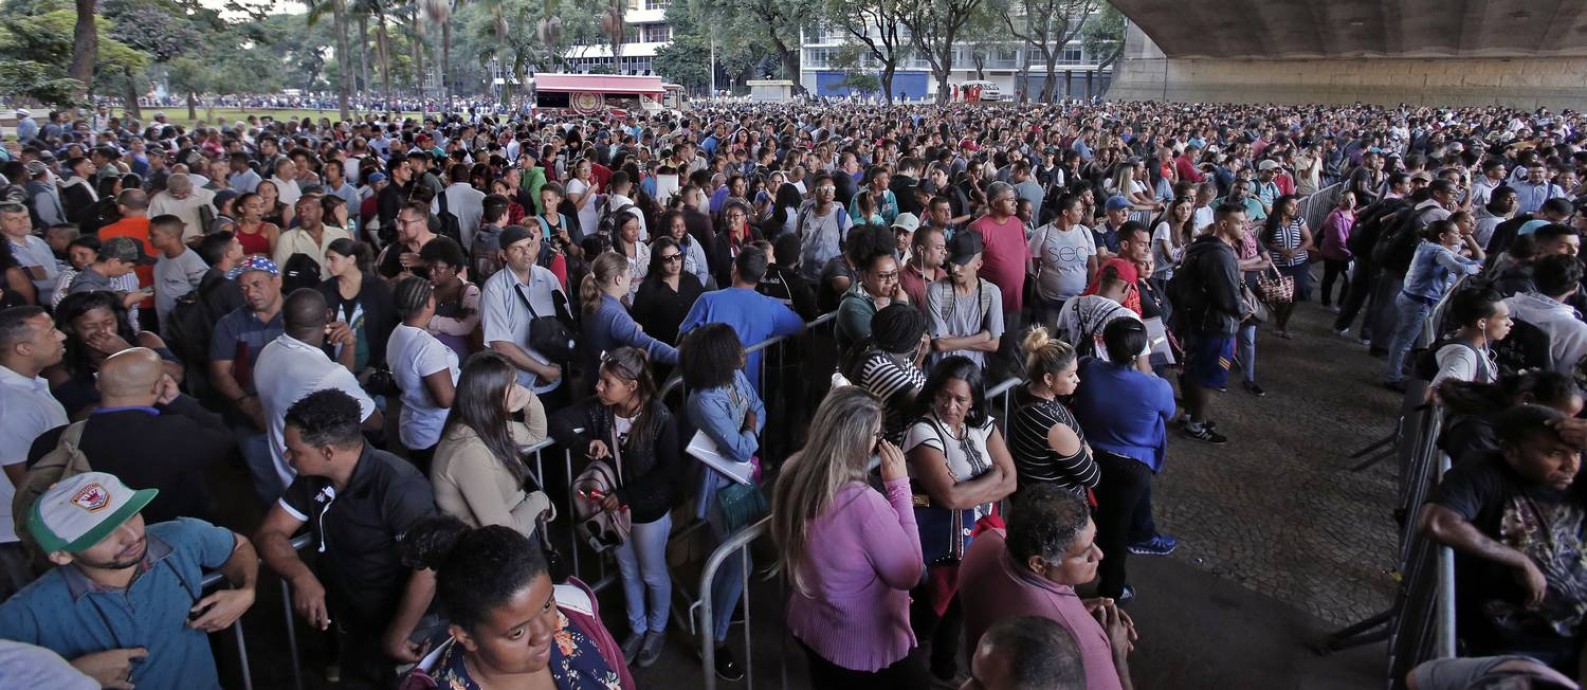 Milhares se aglomeraram no labirinto de alambrados formado para organizar o mutirão do emprego em São Paulo Foto: Edilson Dantas / Agência O Globo